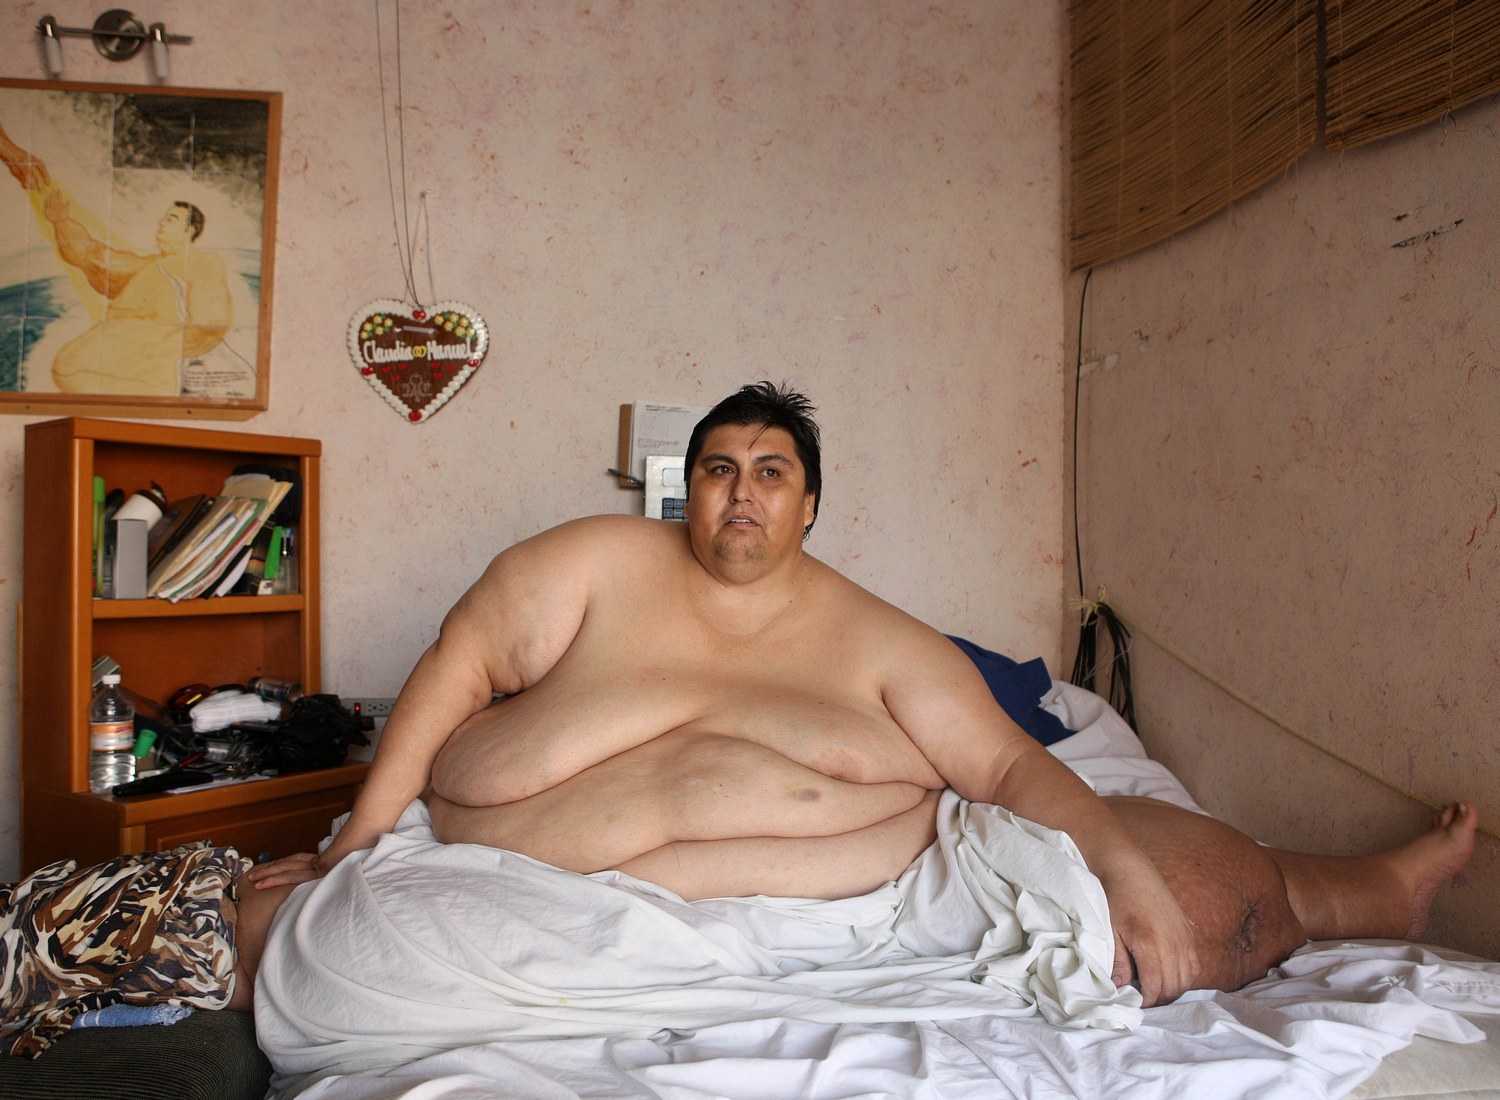 Топ-10 самых толстых людей в мире Список самых толстых мужчин и женщин в мире и в России на сегодня Фотографии, видео и точный вес